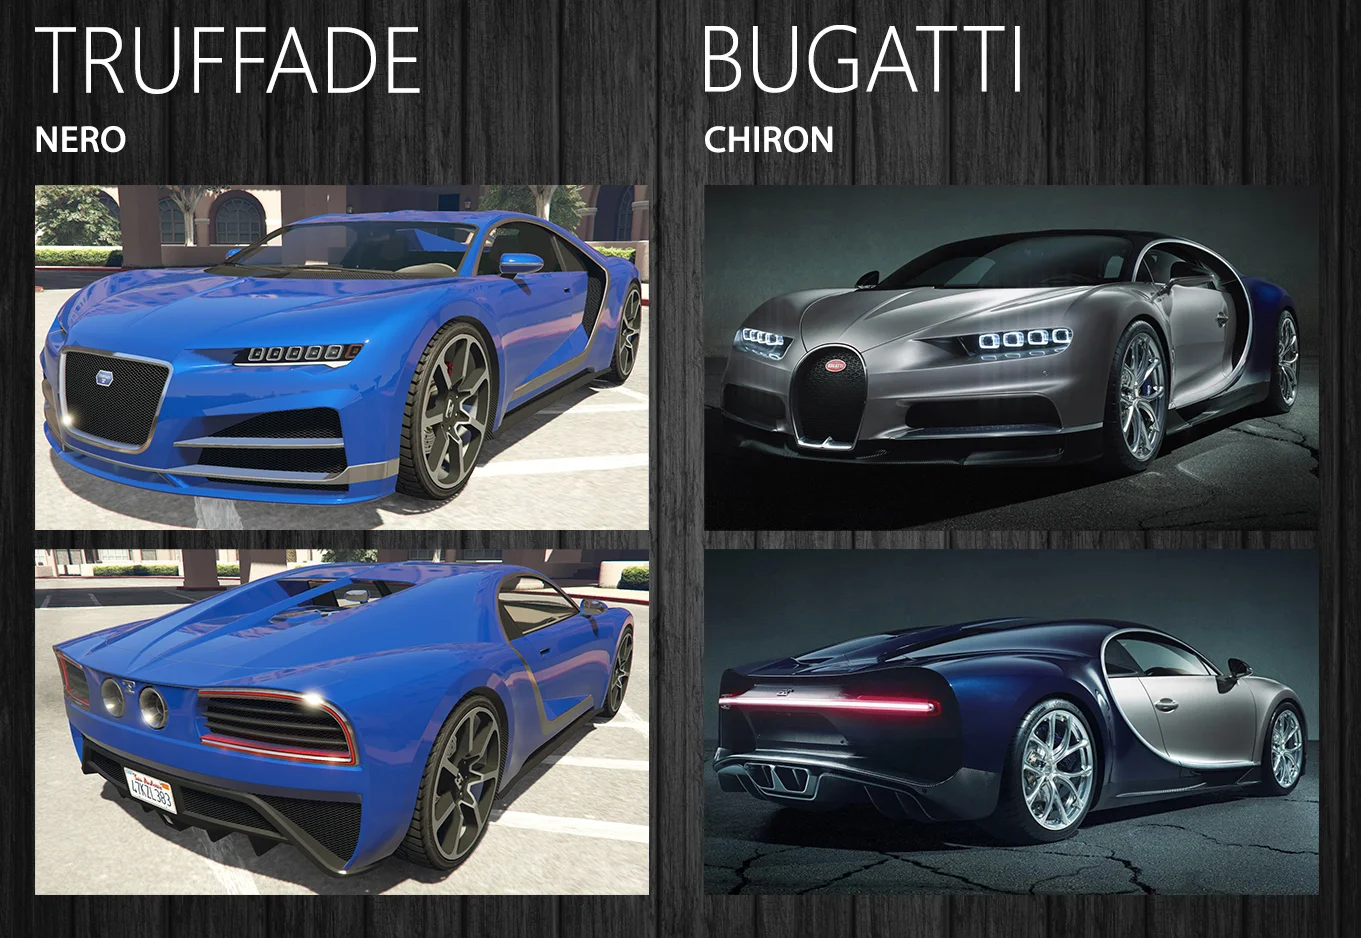 Что до [Bugatti Chiron](https://ru.motor1.com/news/265659/bugatti-chiron-mozhet-razognatsya-do-450-km-ch/), то он уже реально существует, и покупатели выстроились за ним в очереди, а в GTA машина — вот она, садись и гоняй!